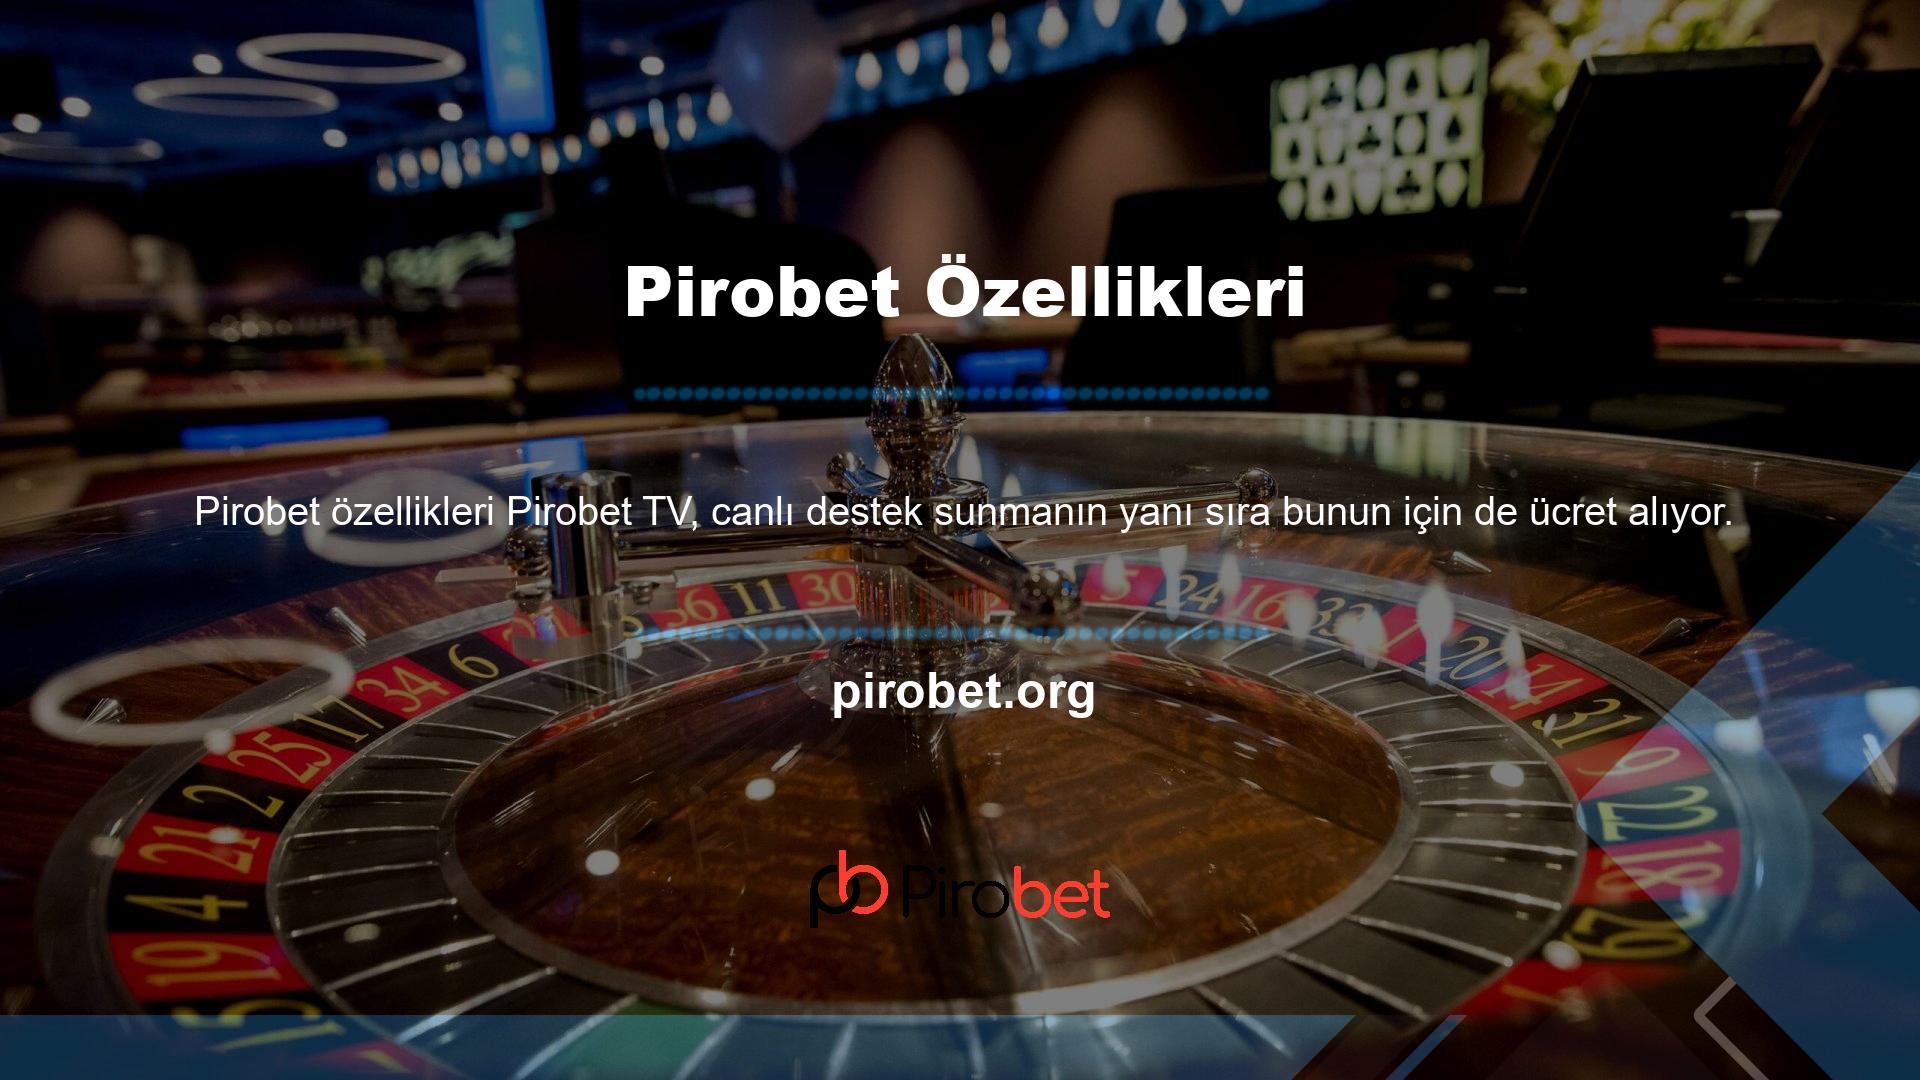 Pirobet ayrıca bonus istekleri konusunda hemen yardıma ihtiyaç duyan Casino ve oyun sitesi kullanıcılarına çevrimiçi destek de sunuyor